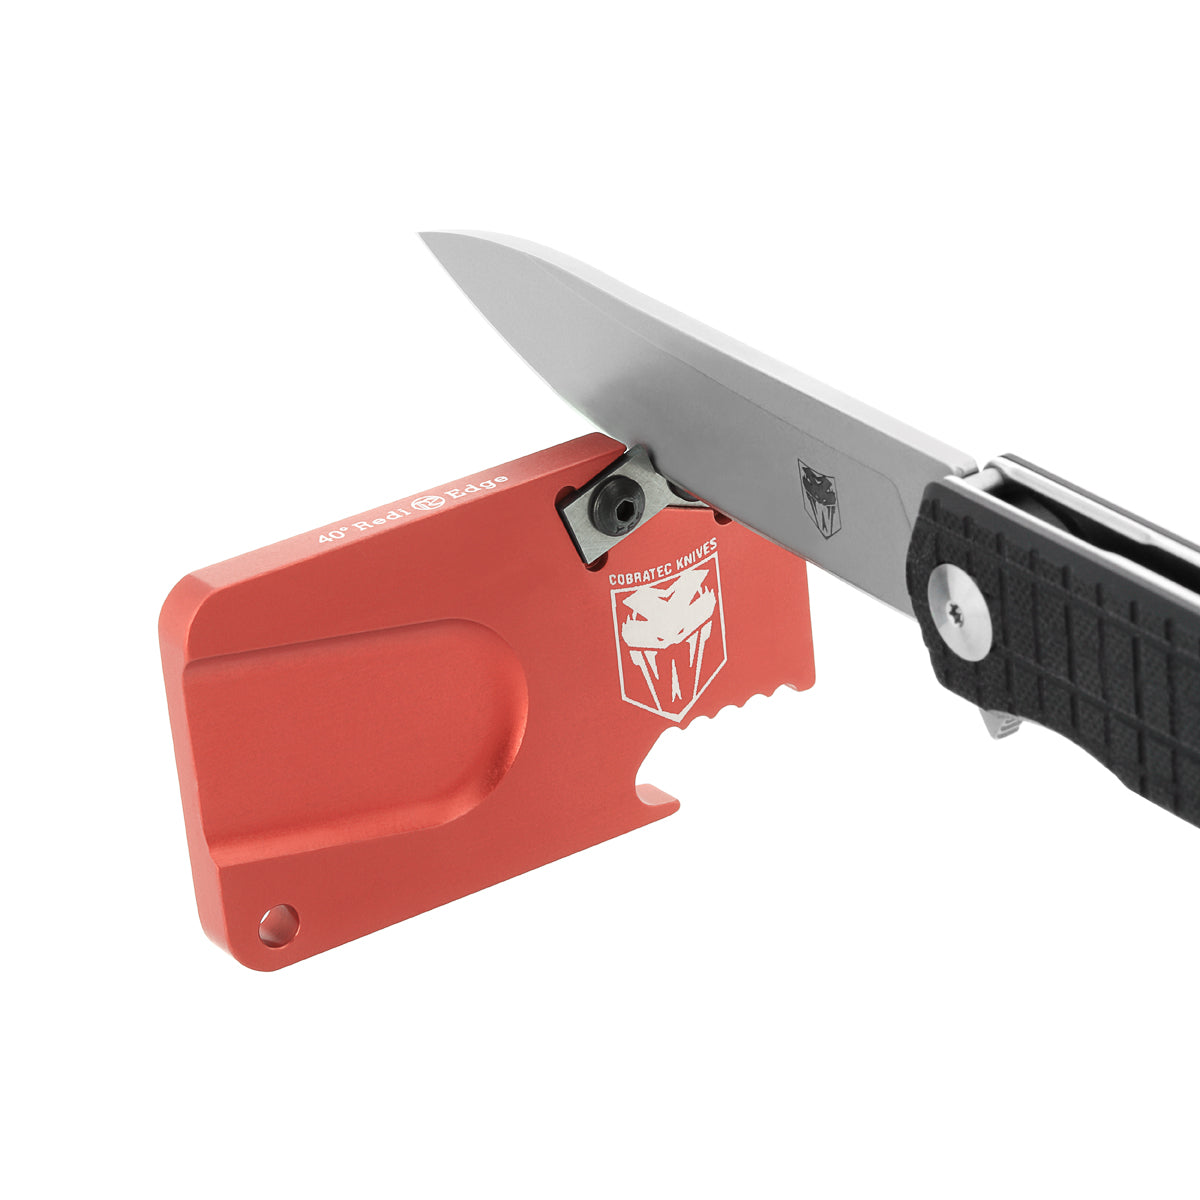 Redi-Edge Knife Sharpener 